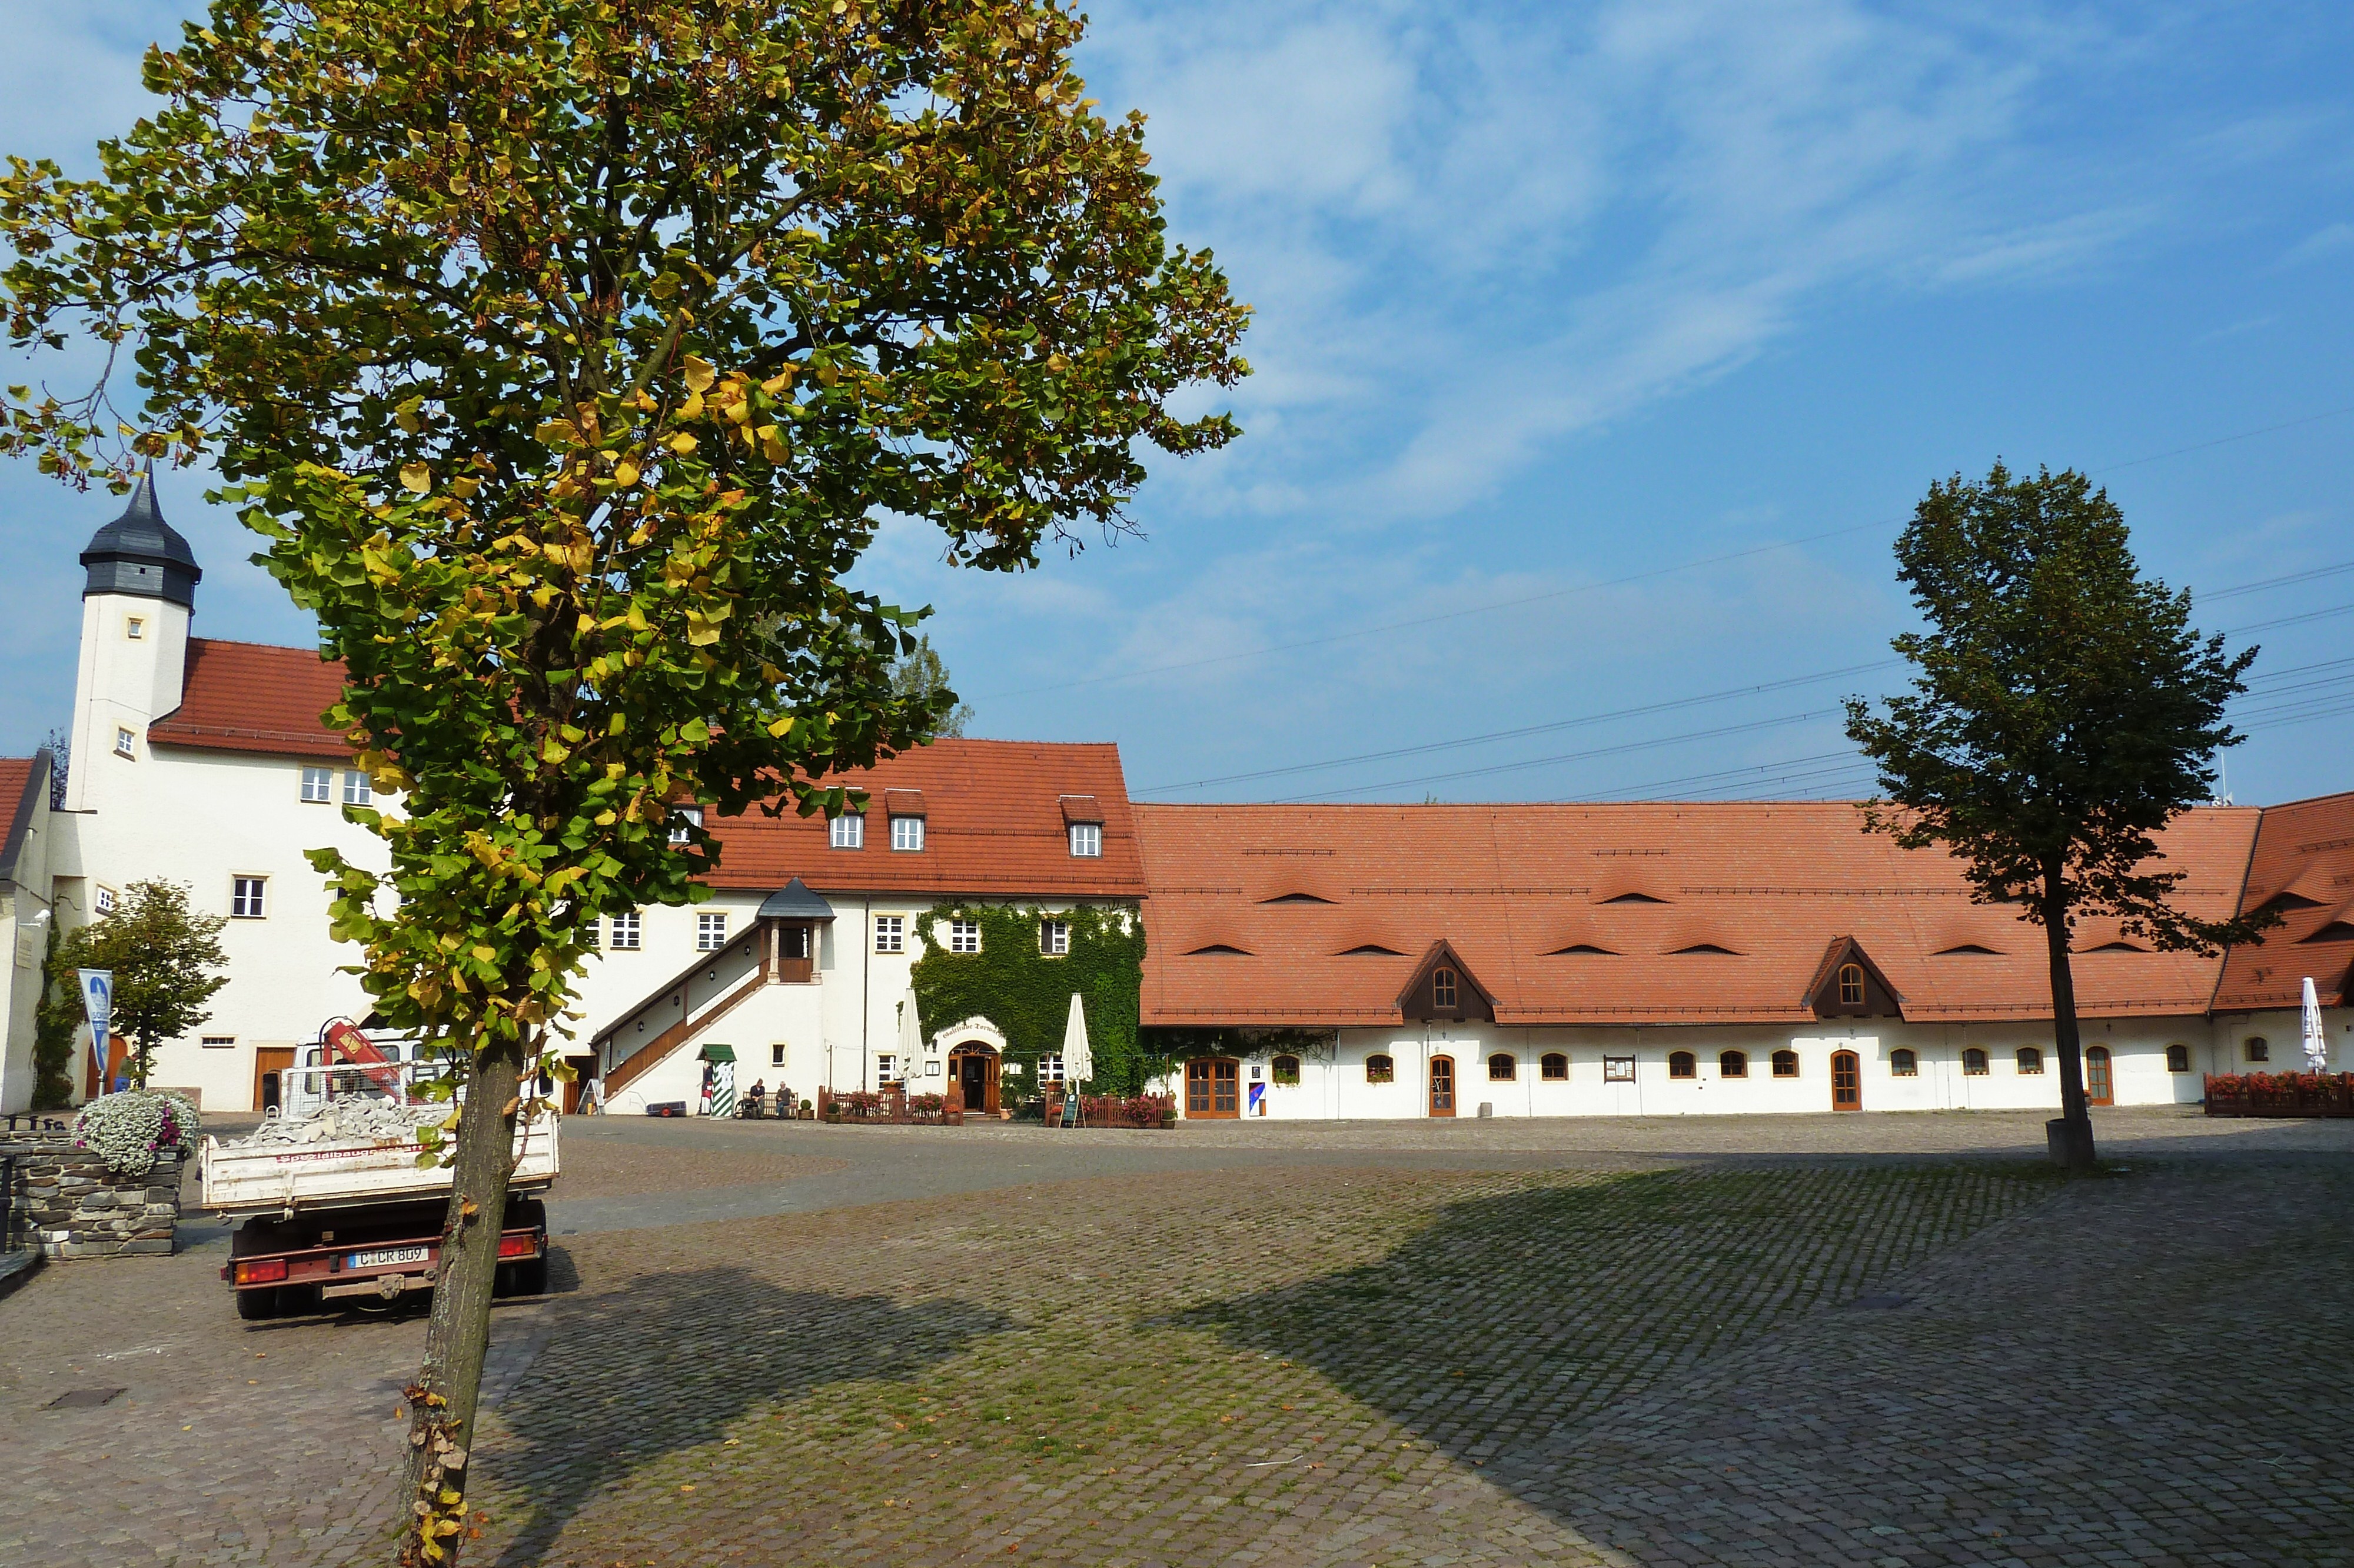 Wasserschloss Klaffenbach bei Chemnitz
Schlossplatz